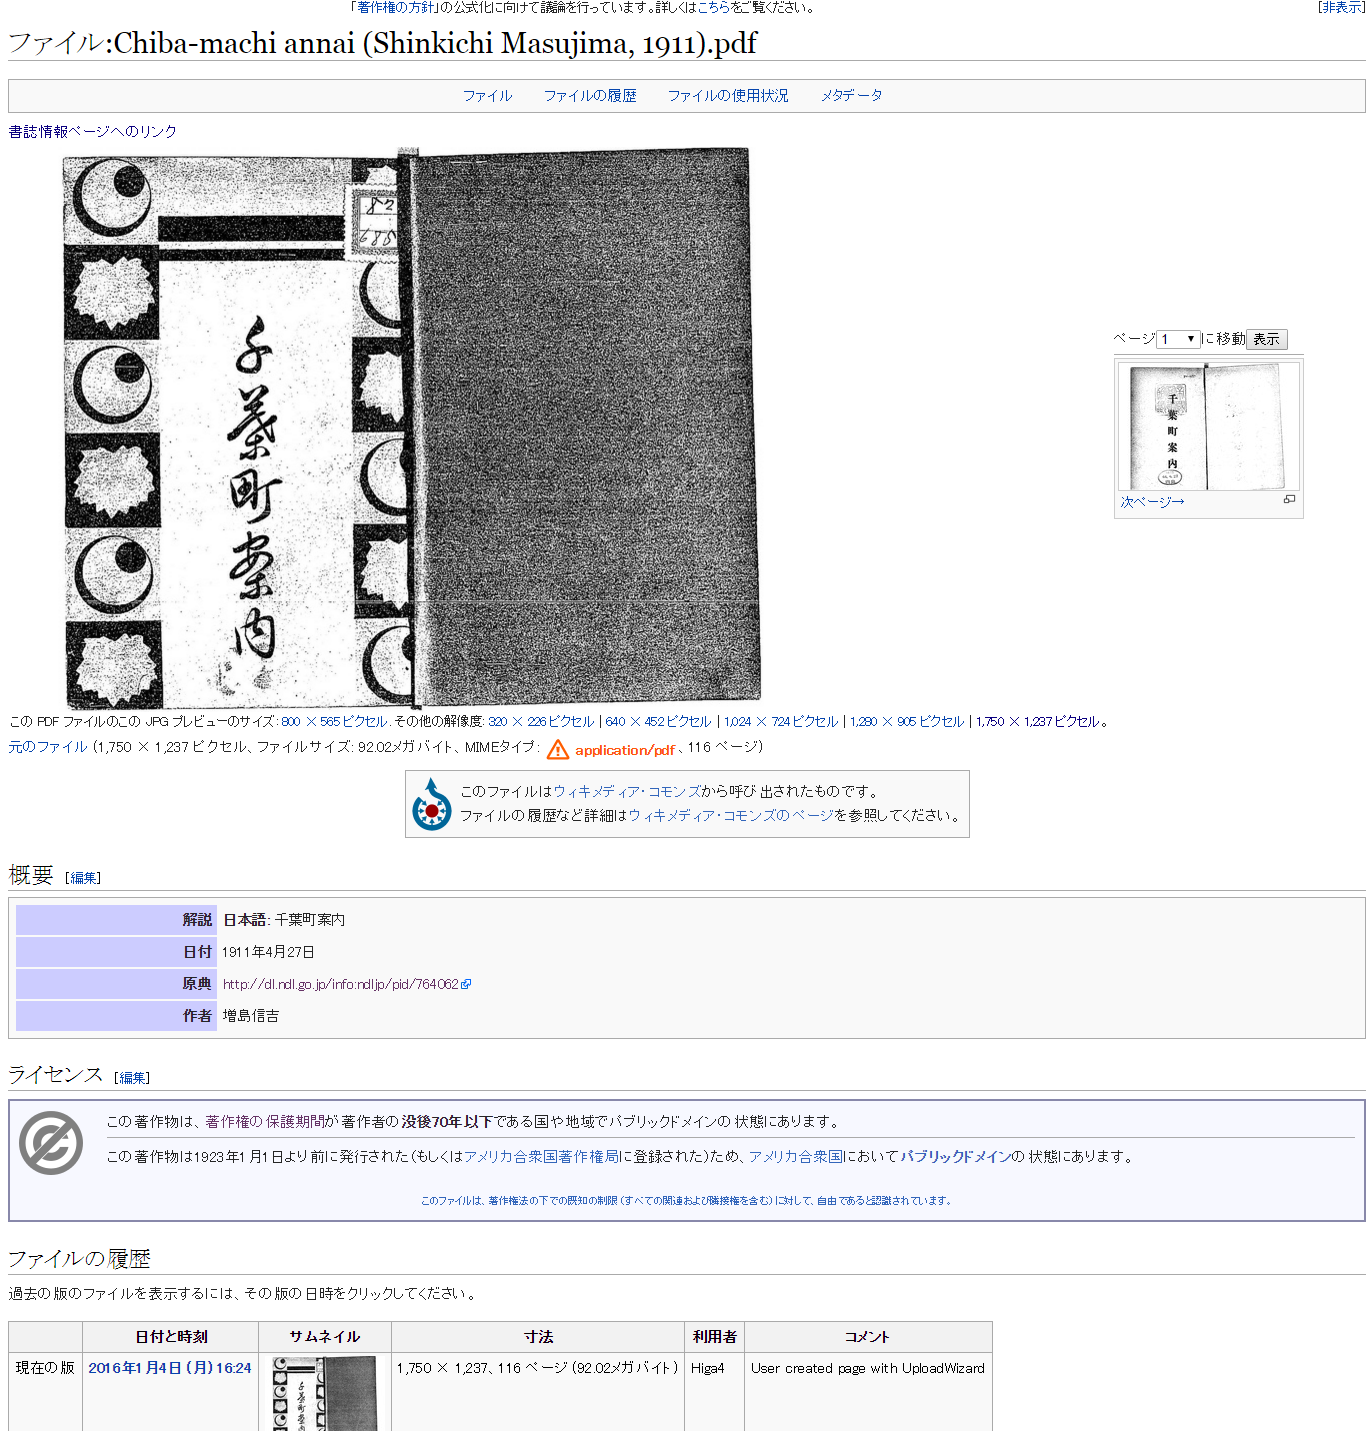 ファイル Chiba machi annai  Shinkichi Masujima  1911 .pdf   Wikisource.png